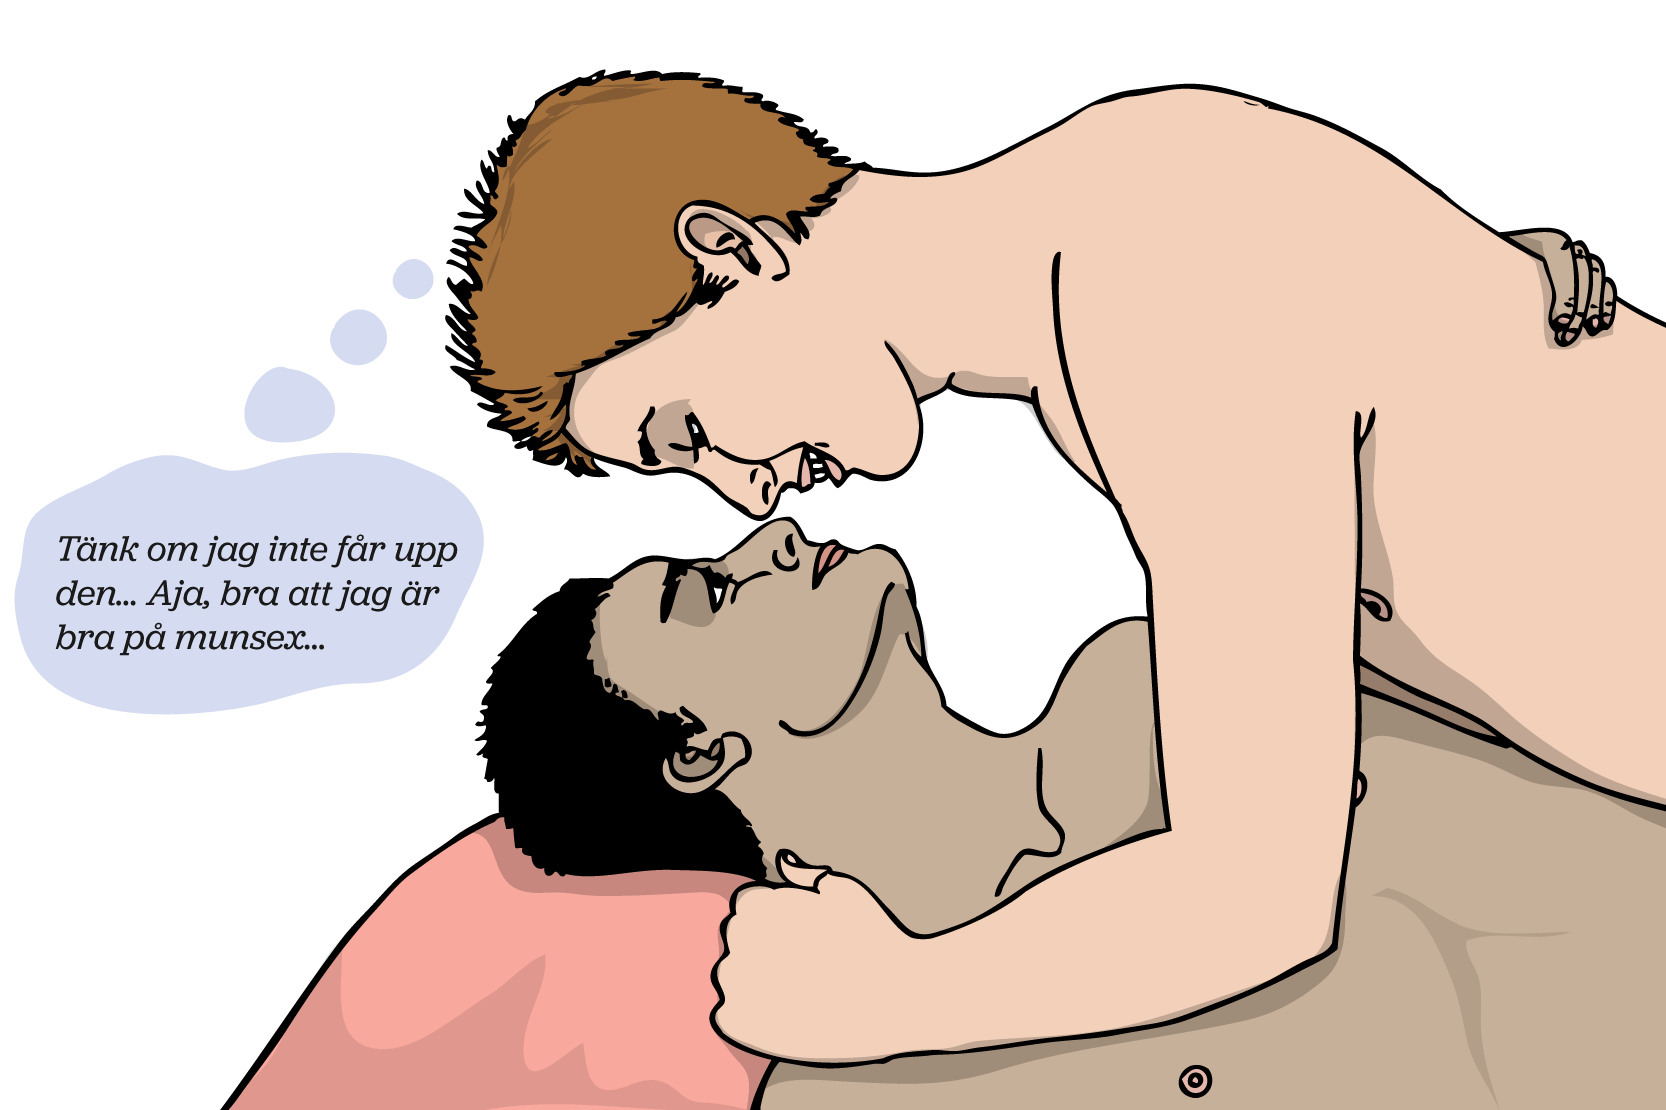 Två personer ligger nakna i en säng och kramas. Den ena tänker: Tänk om jag inte får upp den... Aja, bra att jag är bra på munsex", illustration.